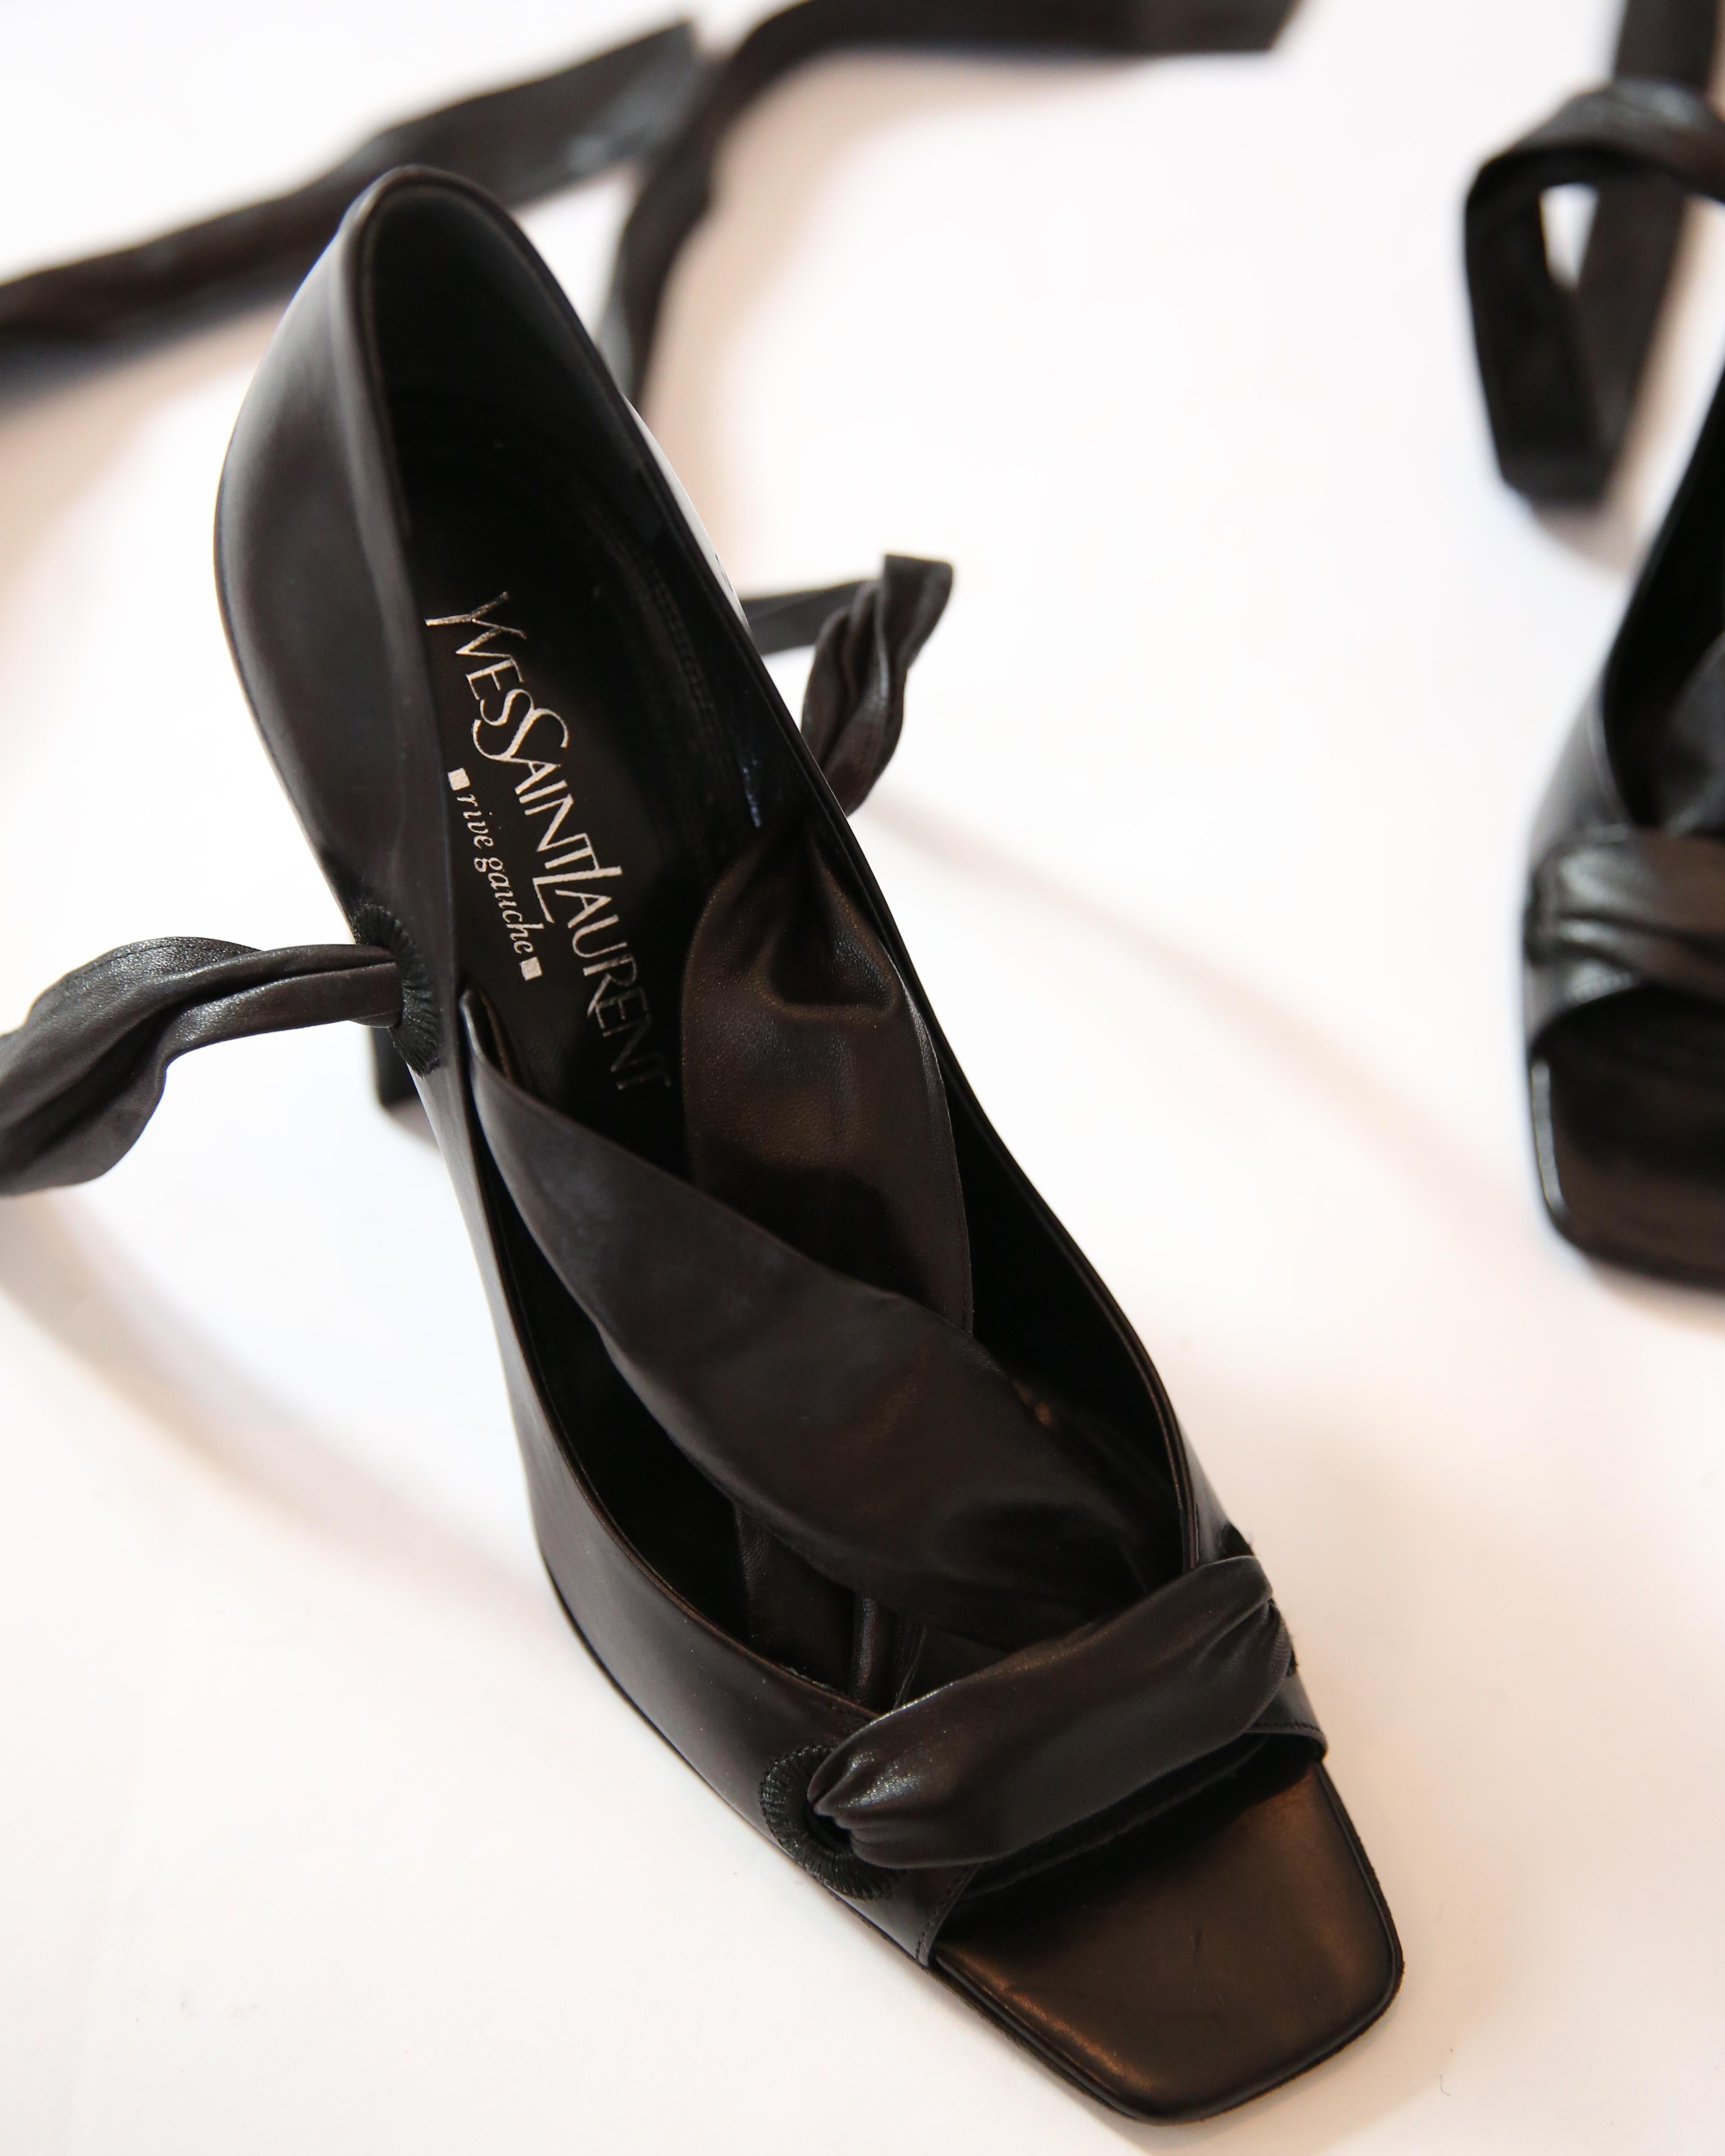 Noir Yves Saint Laurent Rive Gauche Tom Ford sandales noires à talons carrés enveloppés 40 en vente